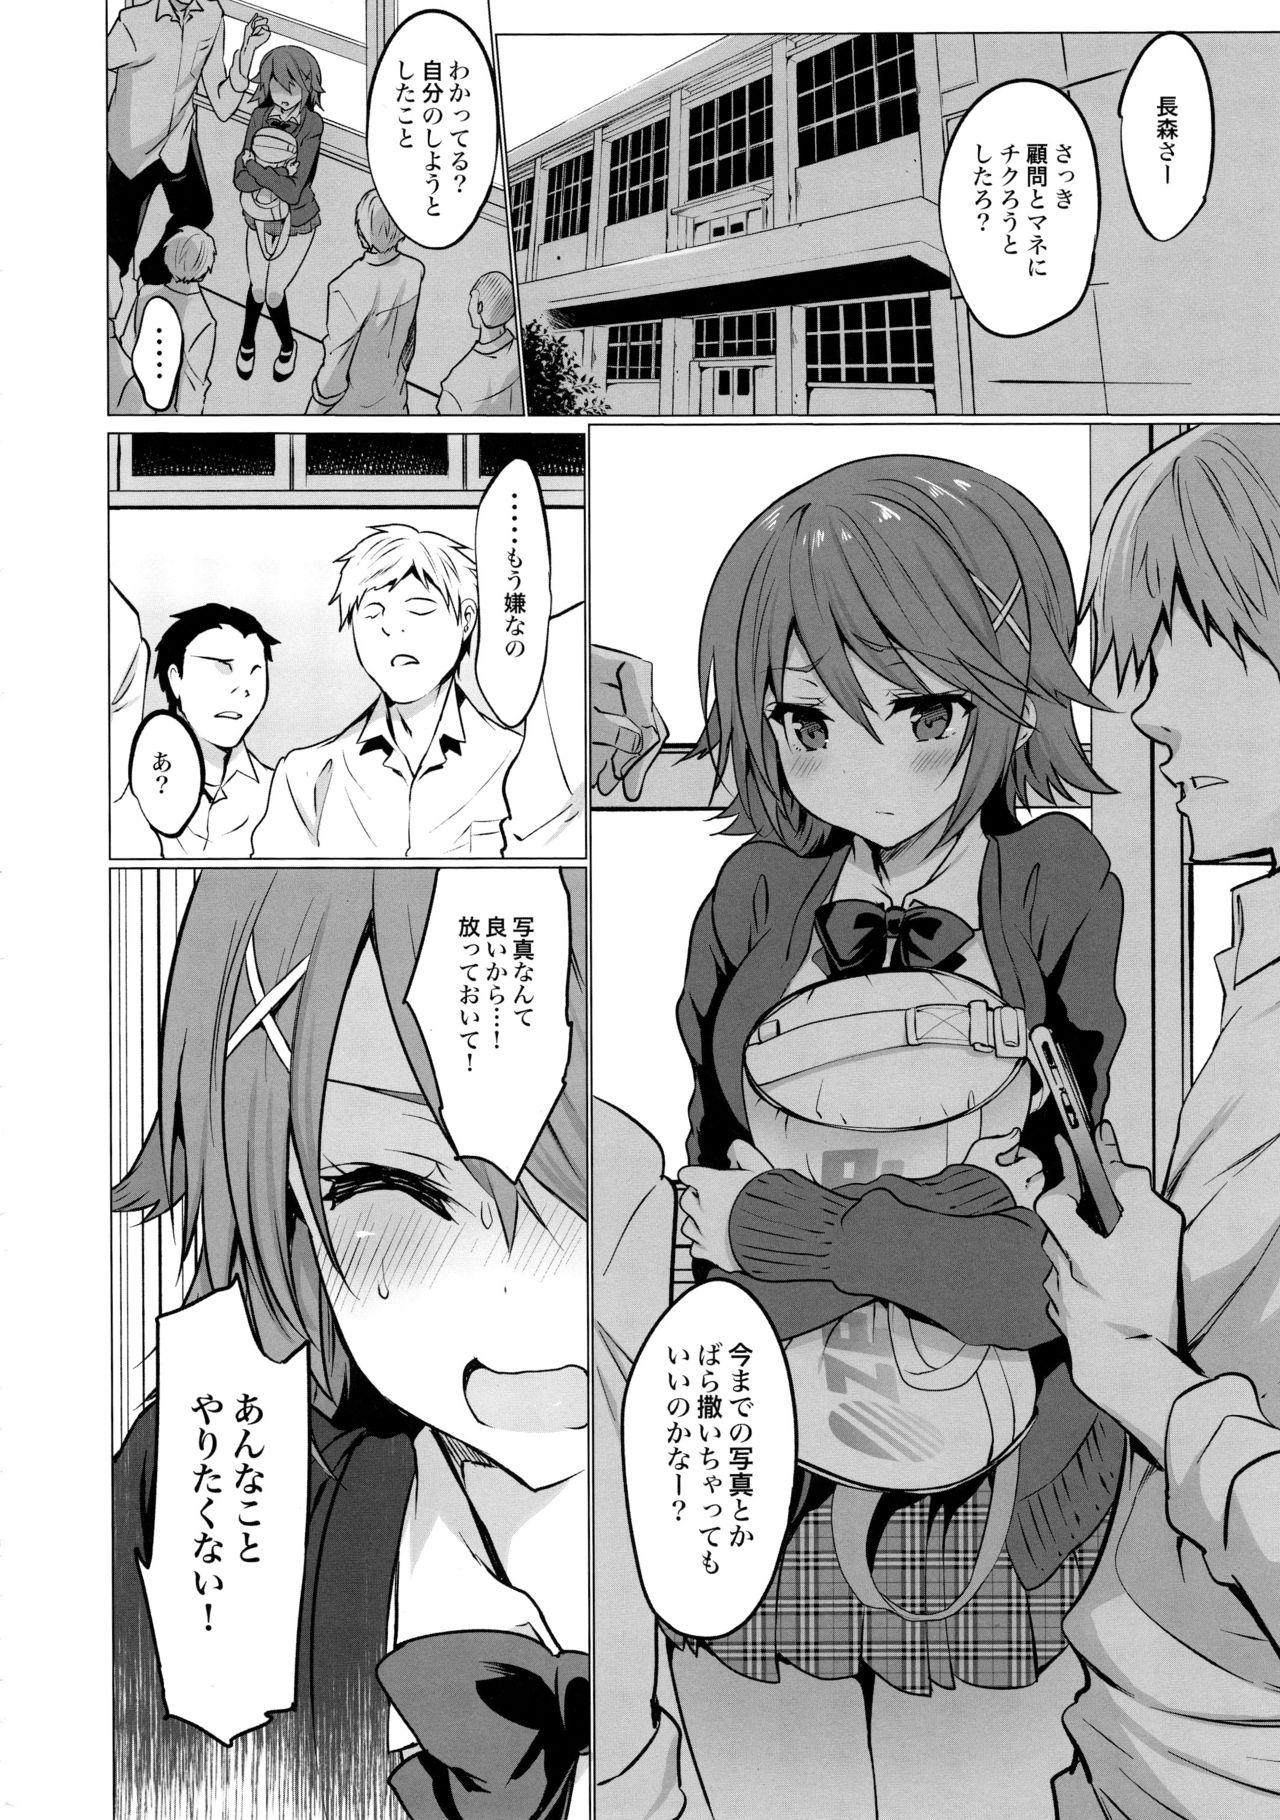 Harcore Gakkou de Seishun! 16 - Original Teen - Page 6